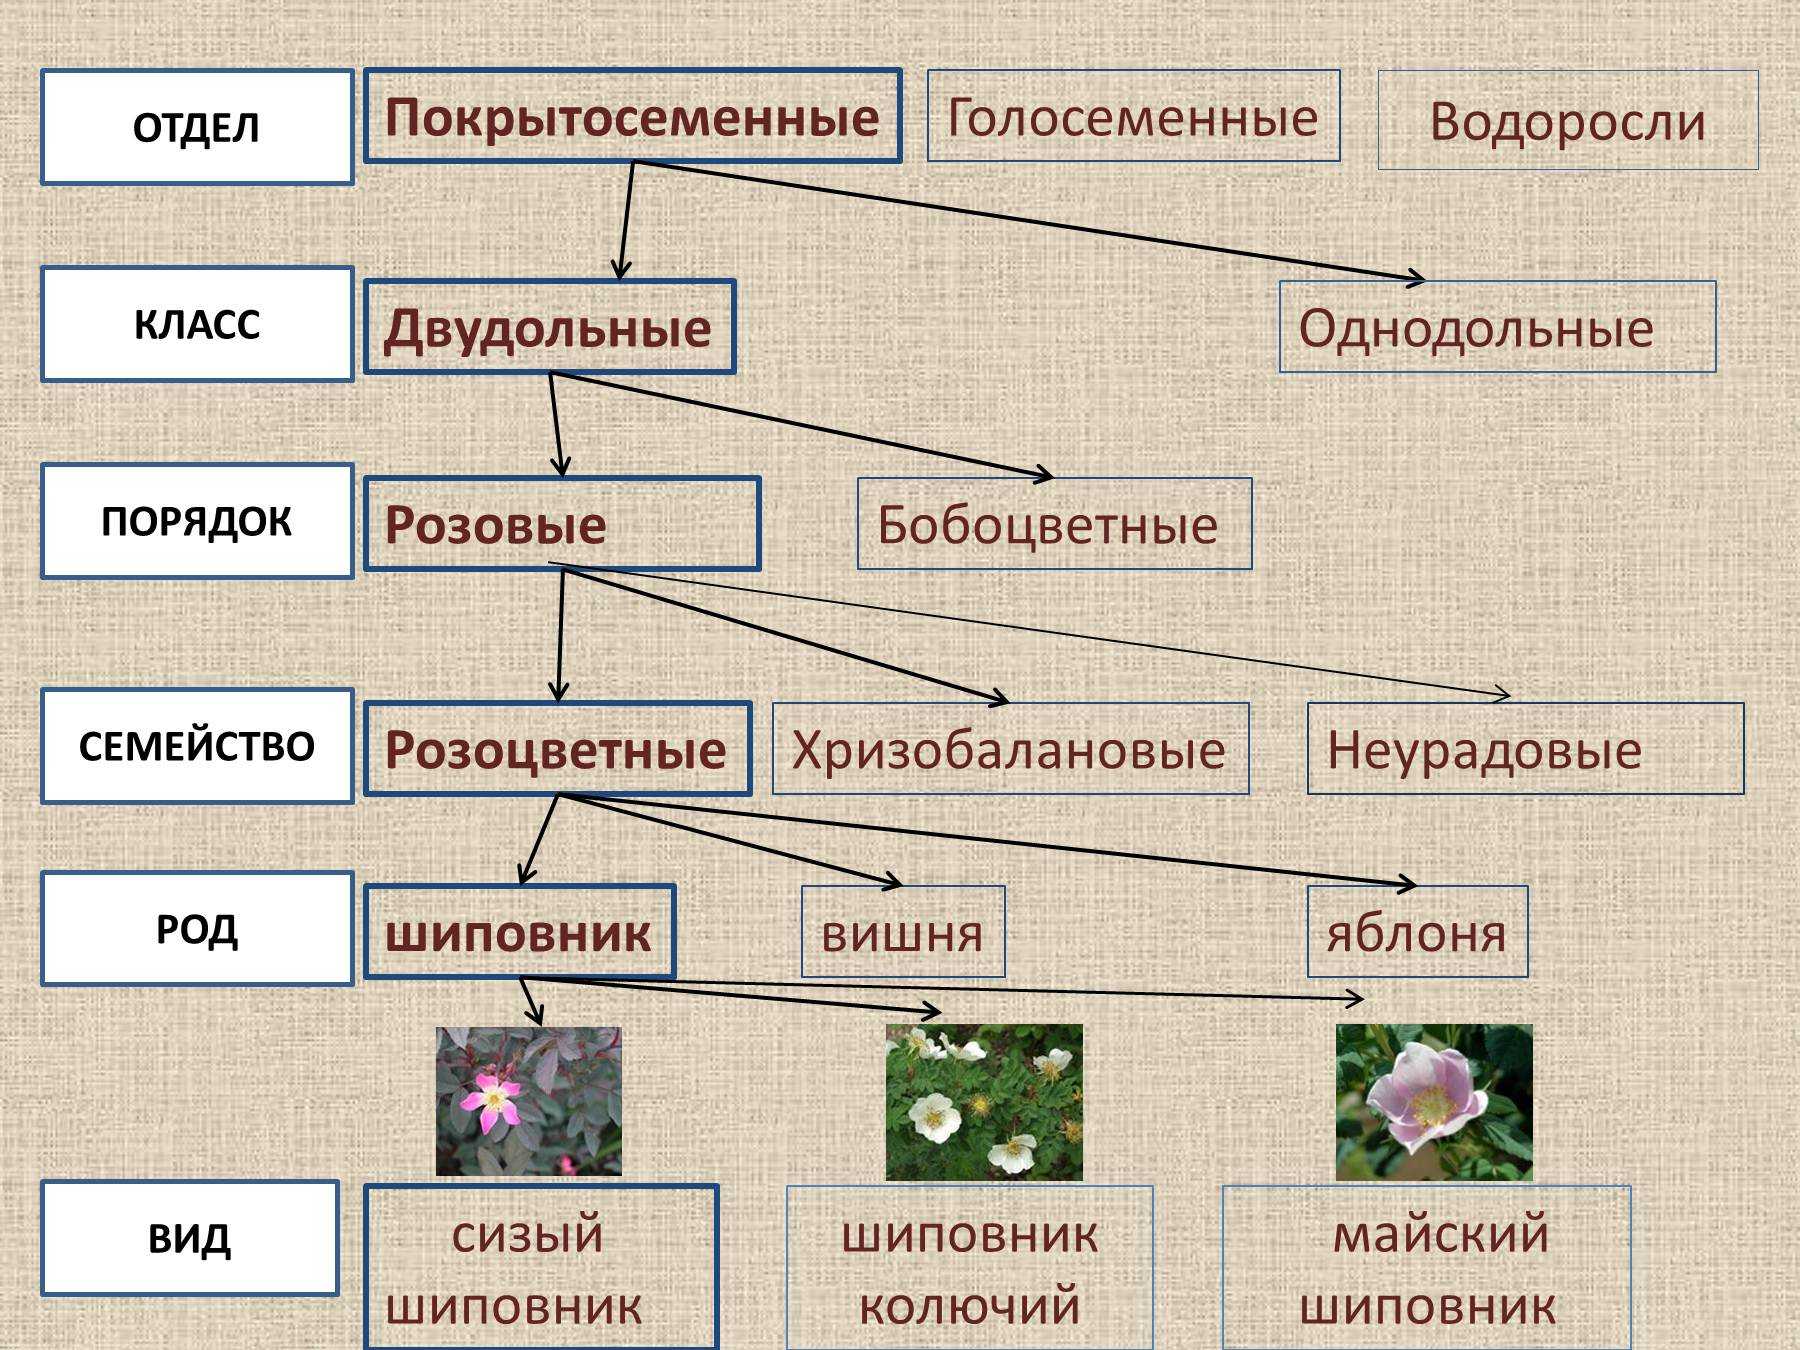 Три примера относящиеся к царству растений. Систематика растений царство отделы. Царство растений отделы классы схема. Систематика царства растений схема. Систематика растений отдел Покрытосеменные классы порядок.